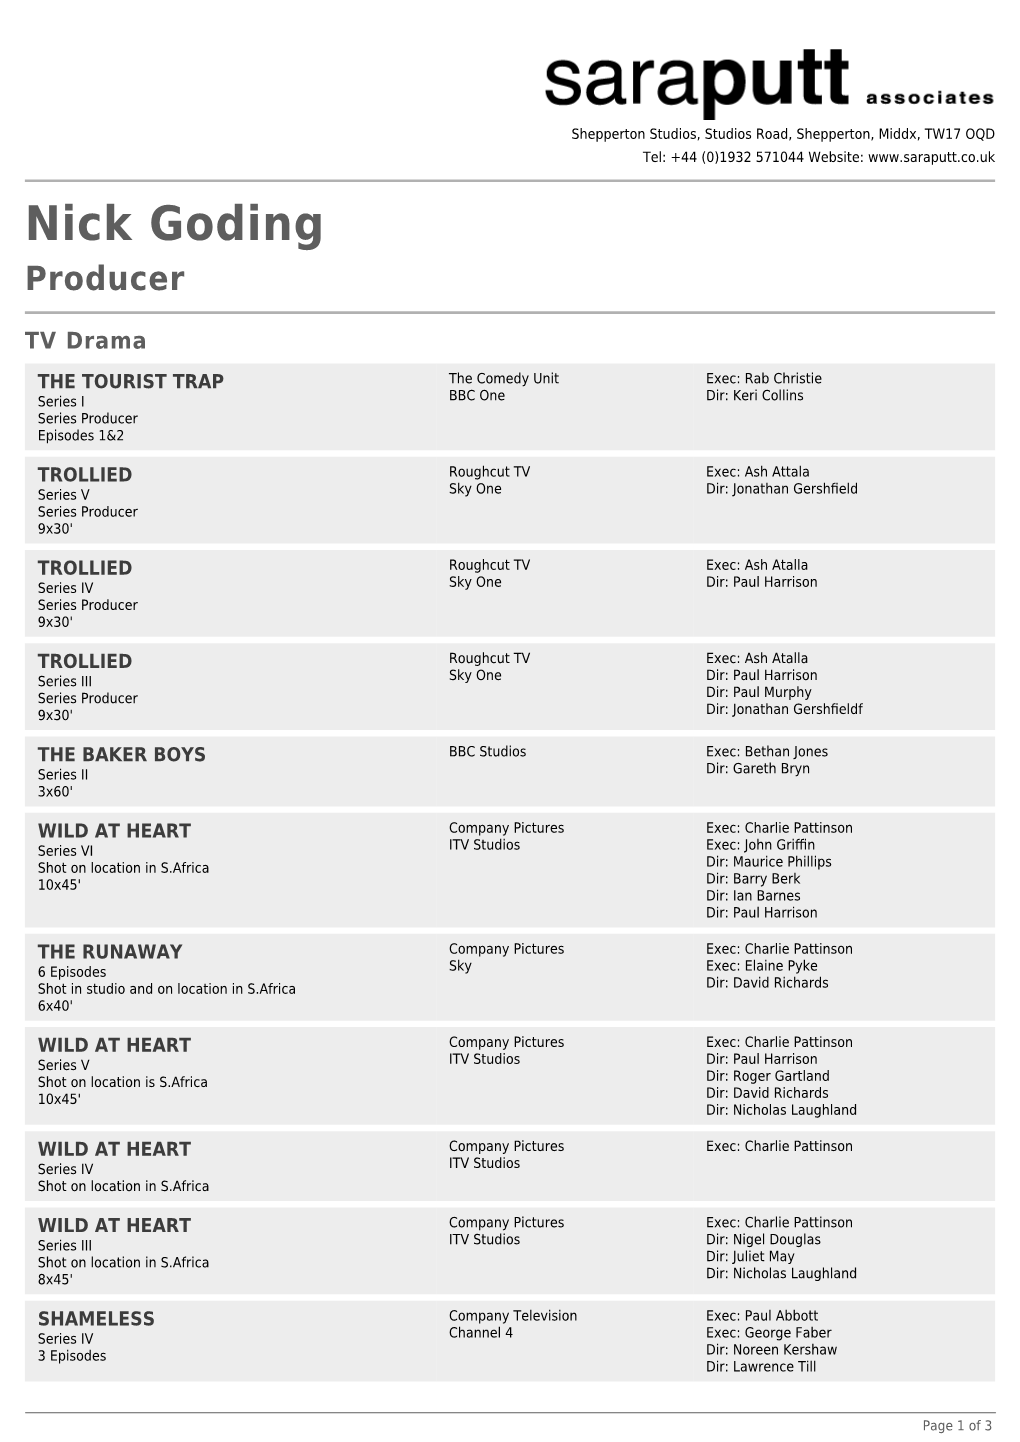 Nick Goding Producer